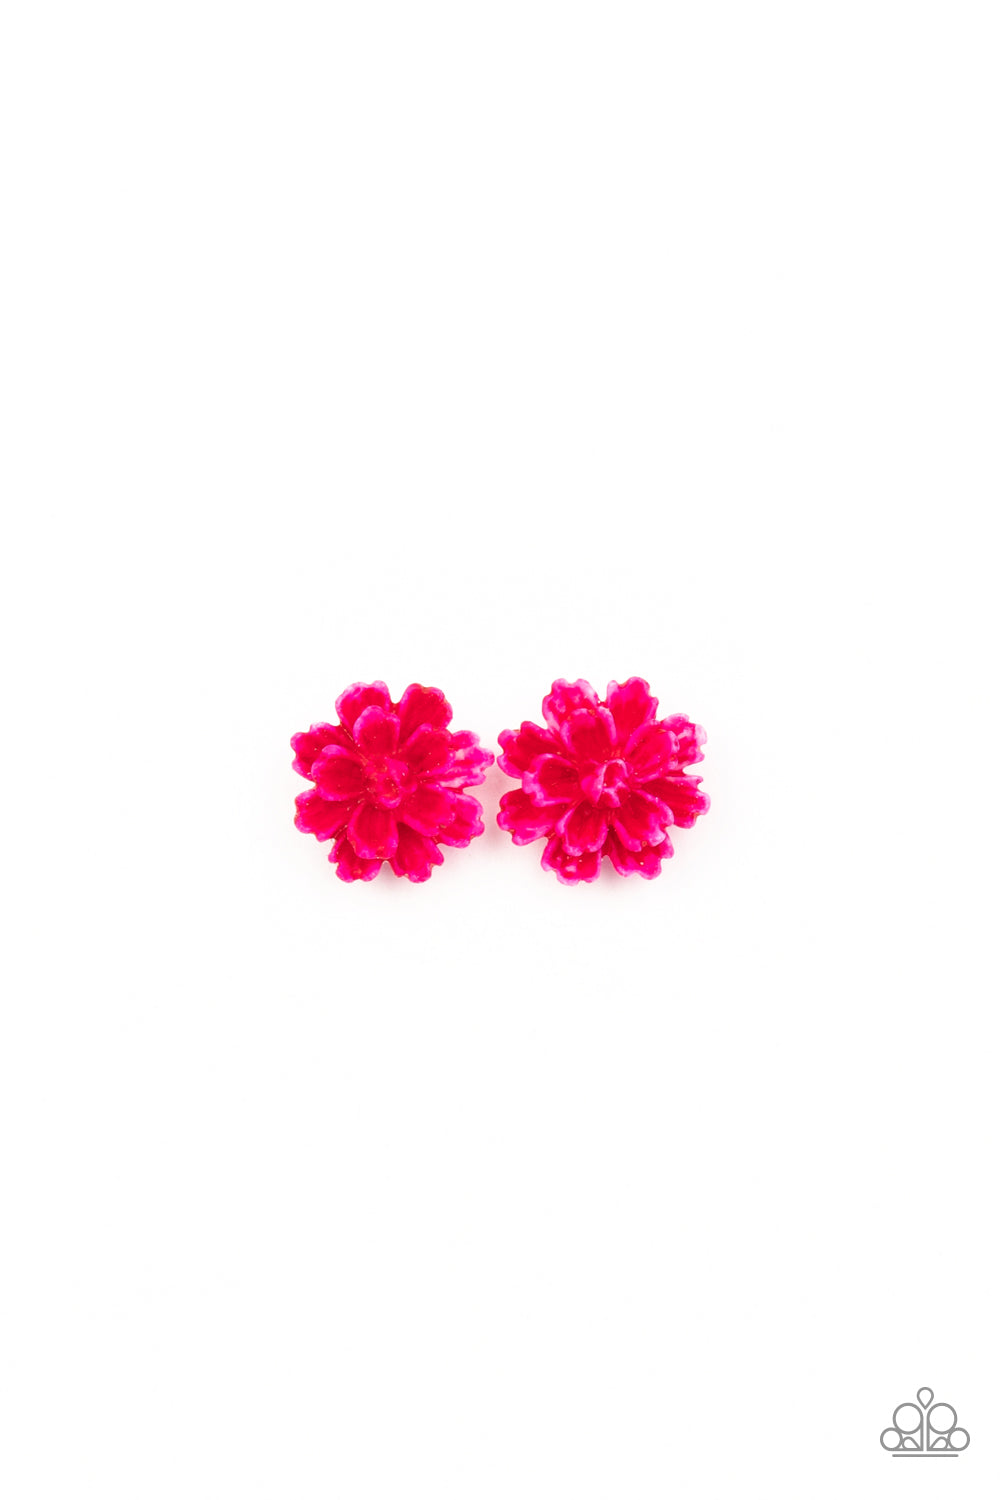 Starlet Shimmer Floral Earring Singles♥ Starlet Shimmer Earrings♥ Paparazzi ♥